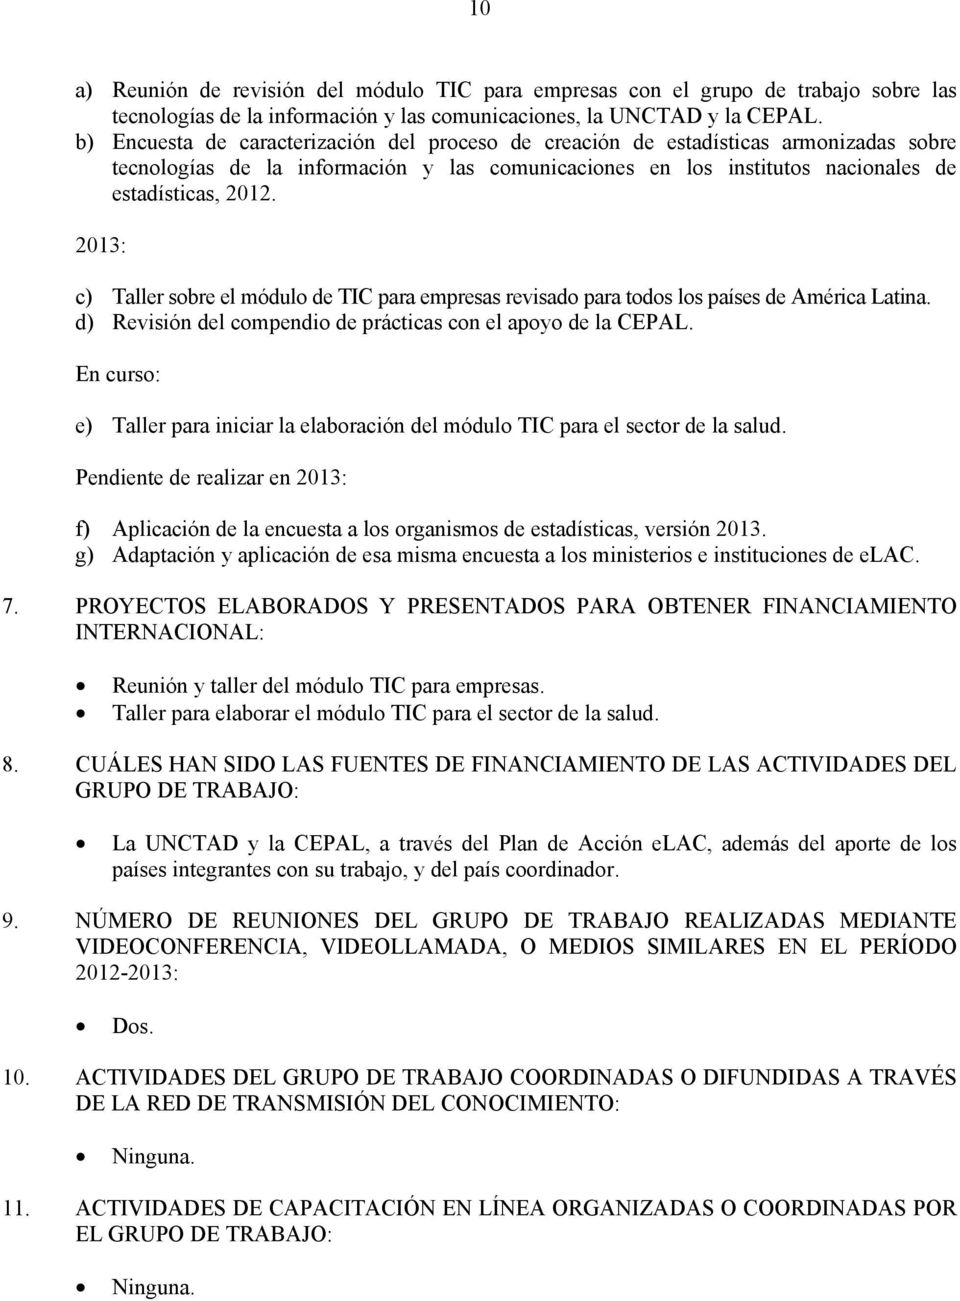 2013: c) Taller sobre el módulo de TIC para empresas revisado para todos los países de América Latina. d) Revisión del compendio de prácticas con el apoyo de la CEPAL.